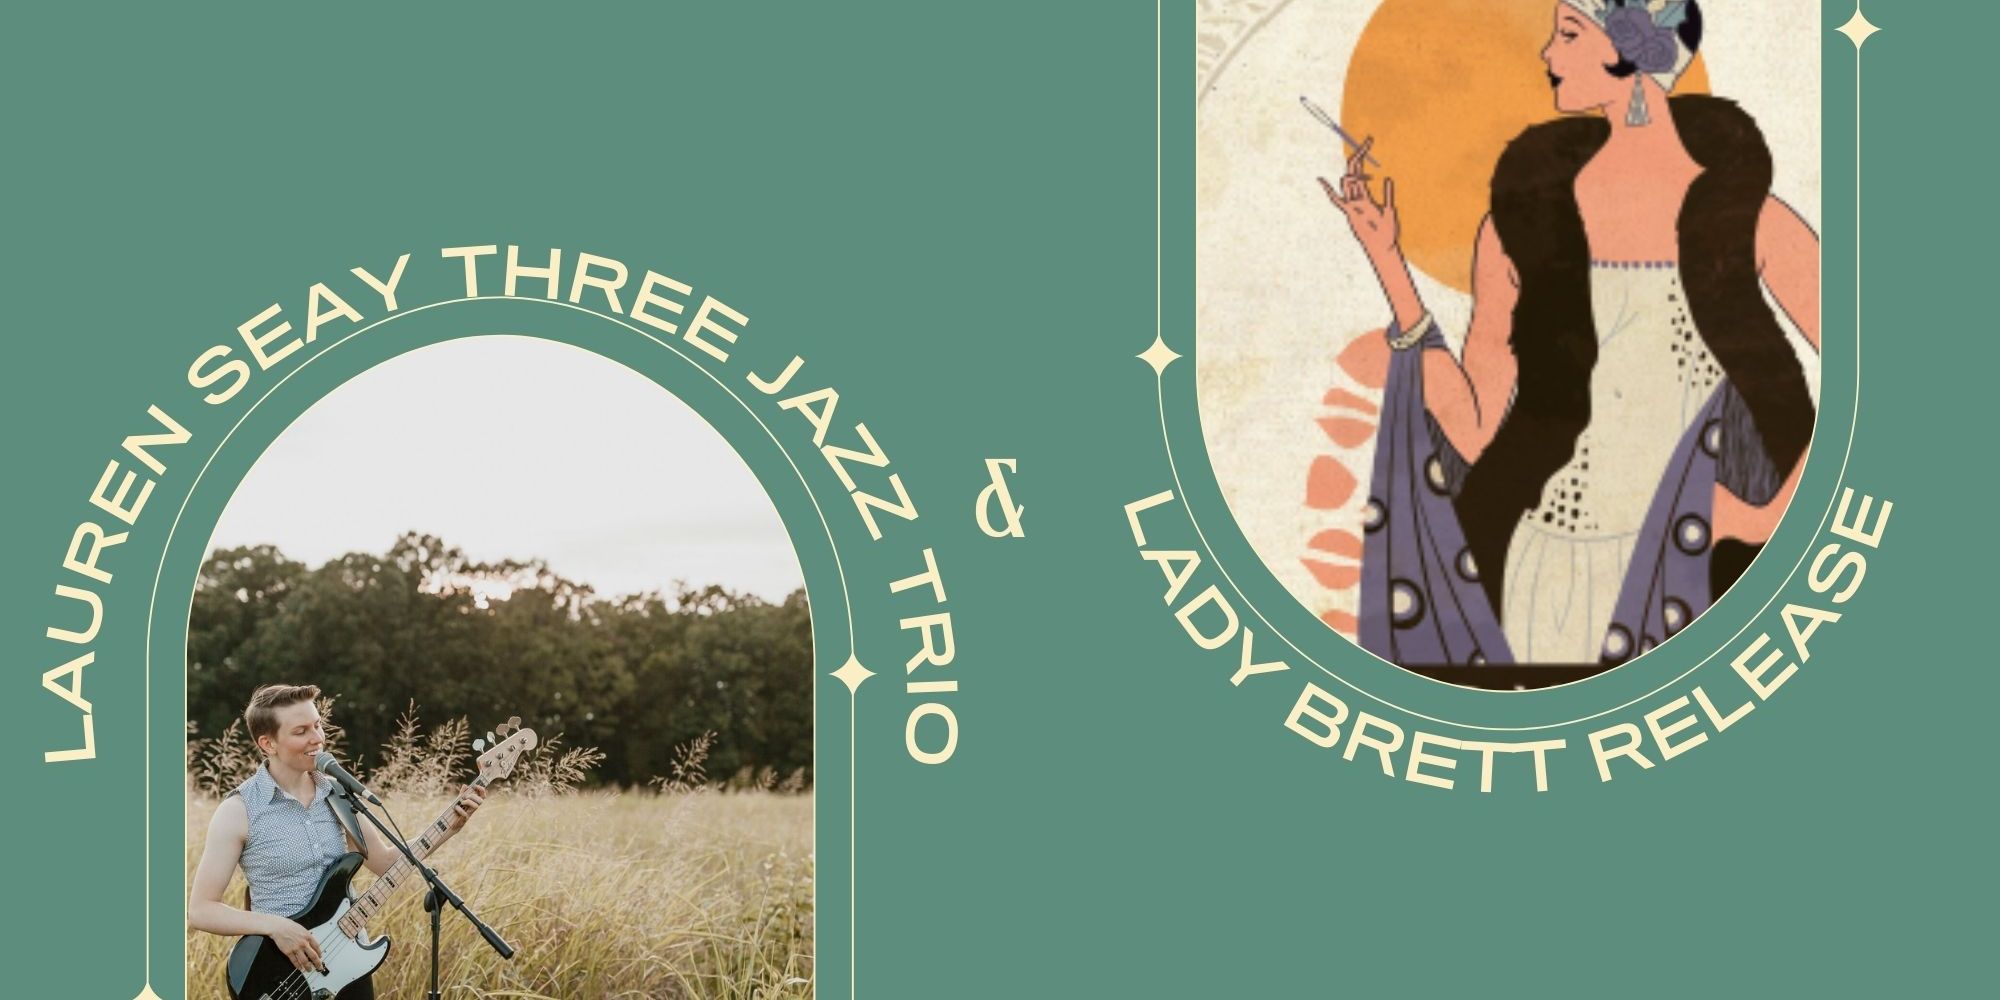 Lauren Seay Three Jazz Trio+ Beer Release promotional image